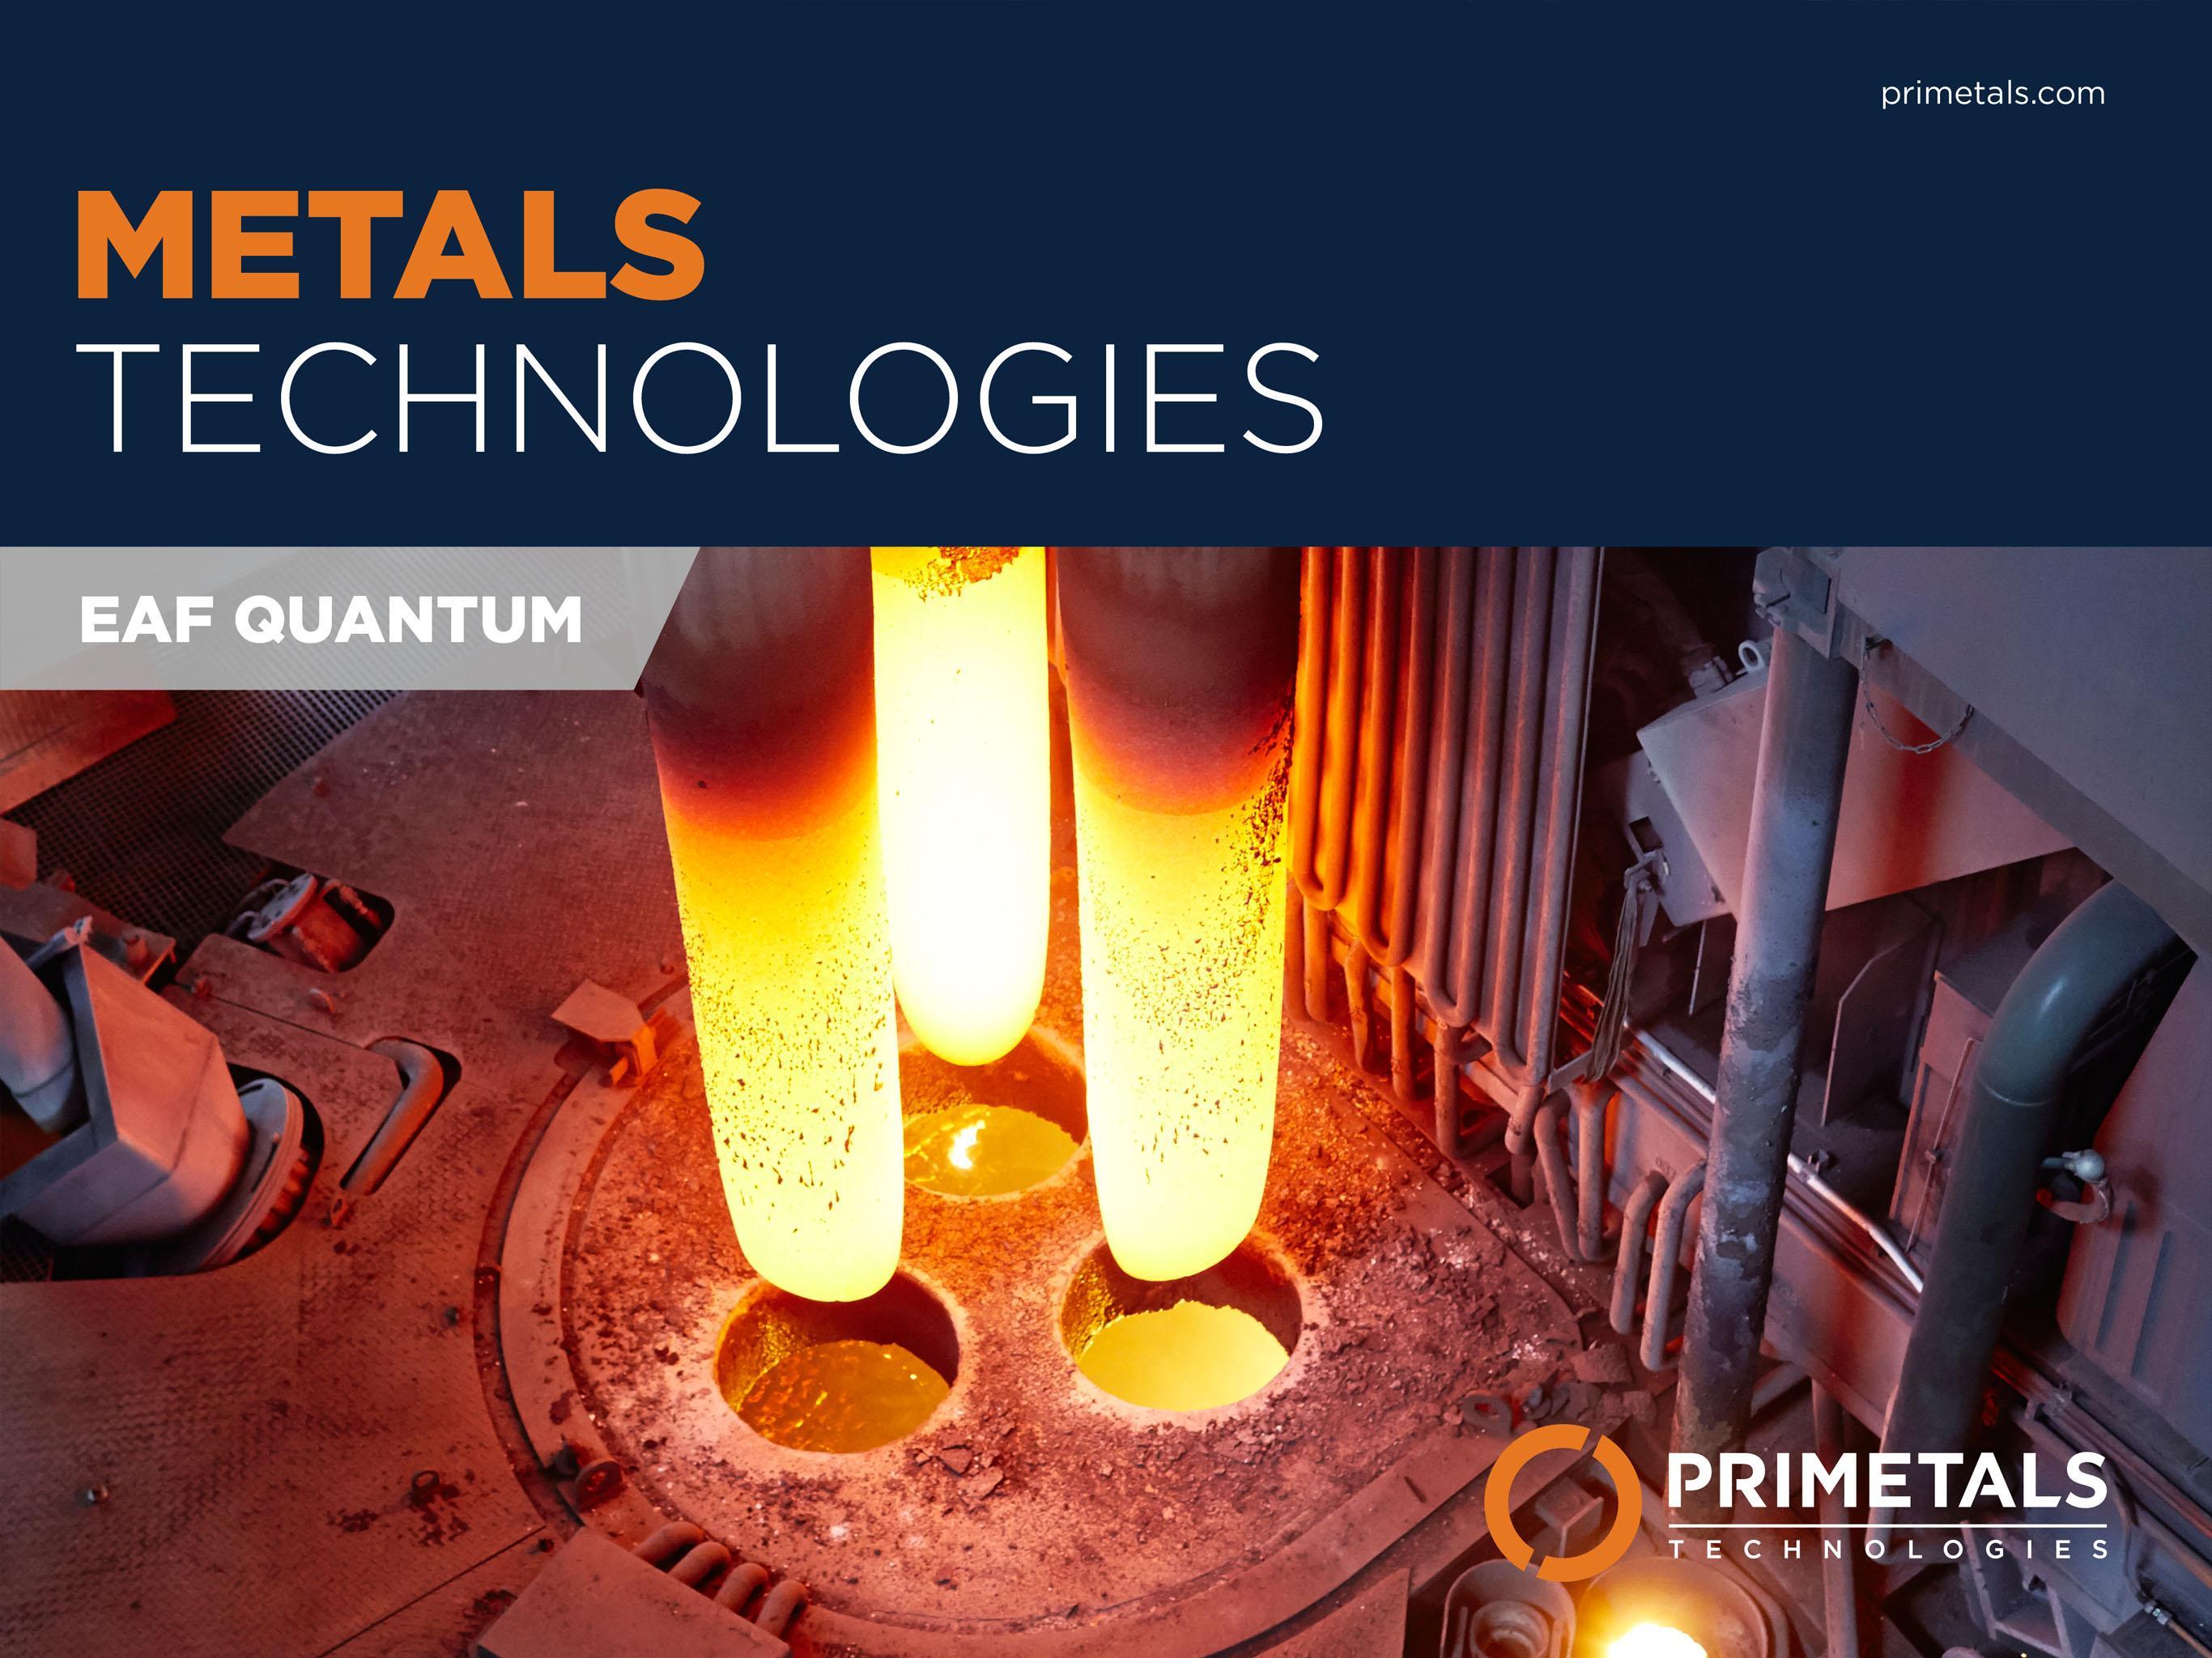 Technology metals. Primetals.